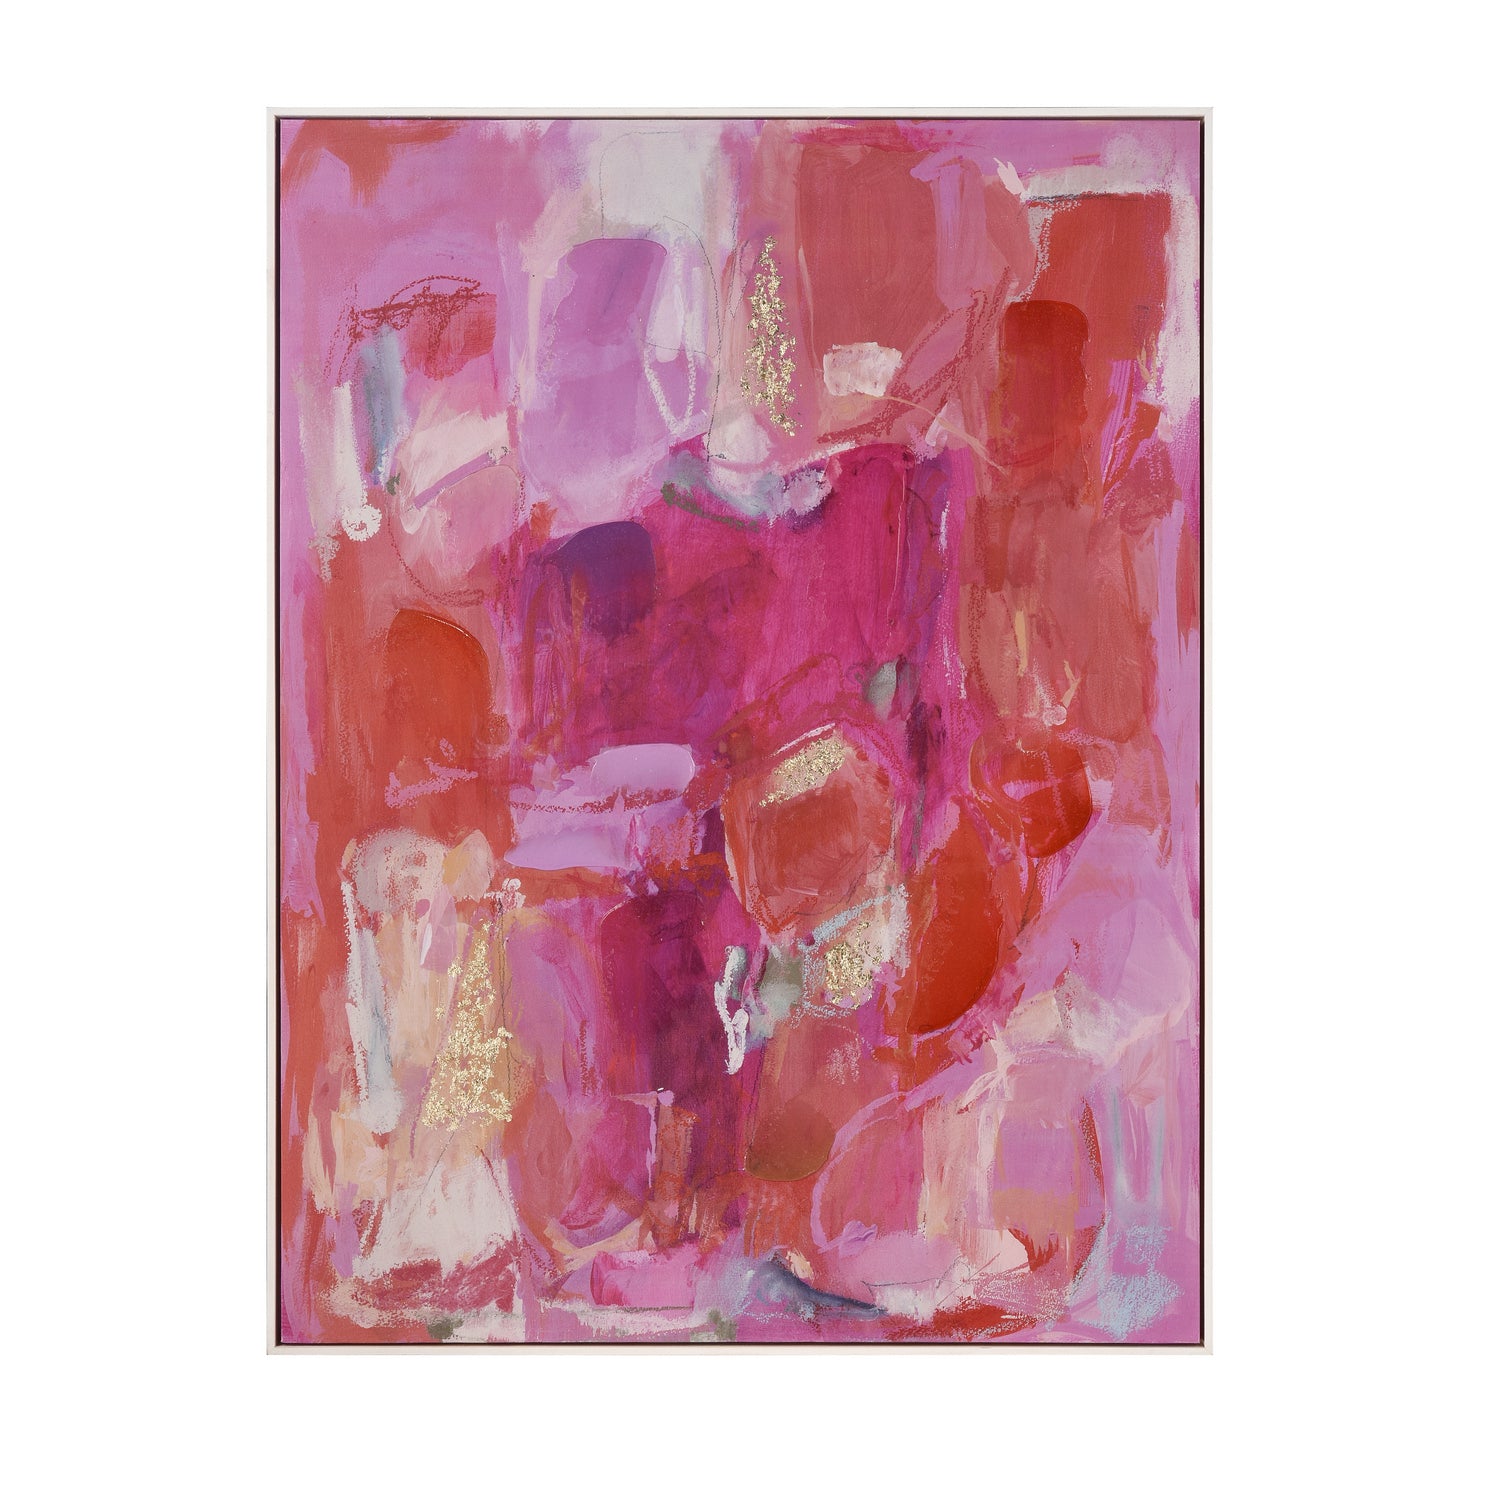 ELK Home - S0056-10451 - Framed Wall Art - Pink Flush - Pink